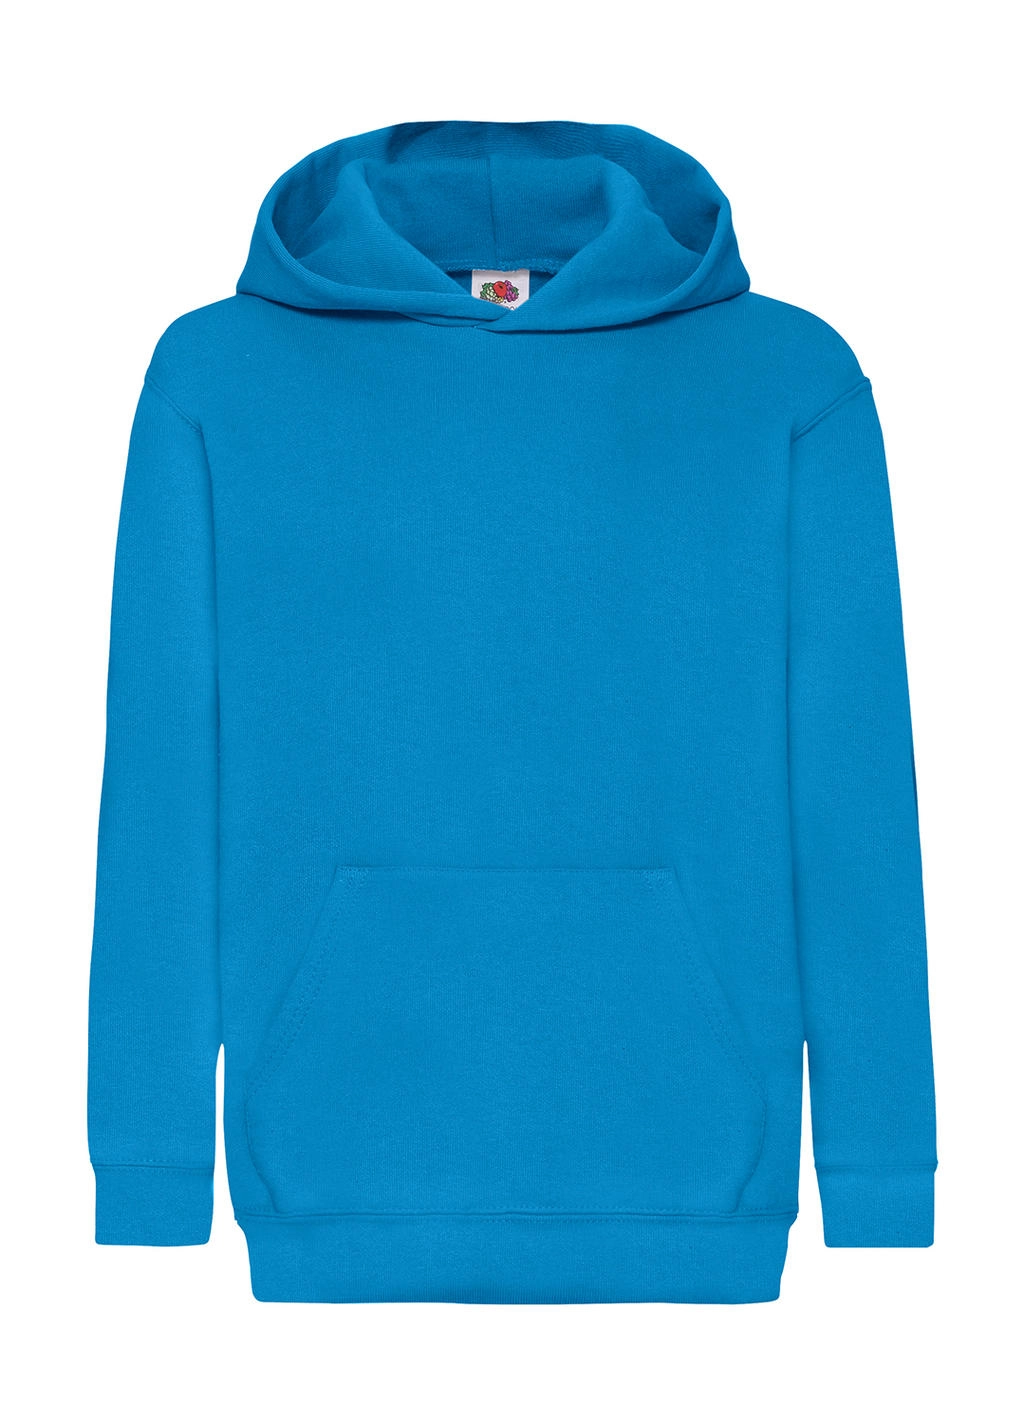 Kids` Classic Hooded Sweat zum Besticken und Bedrucken in der Farbe Azure Blue mit Ihren Logo, Schriftzug oder Motiv.